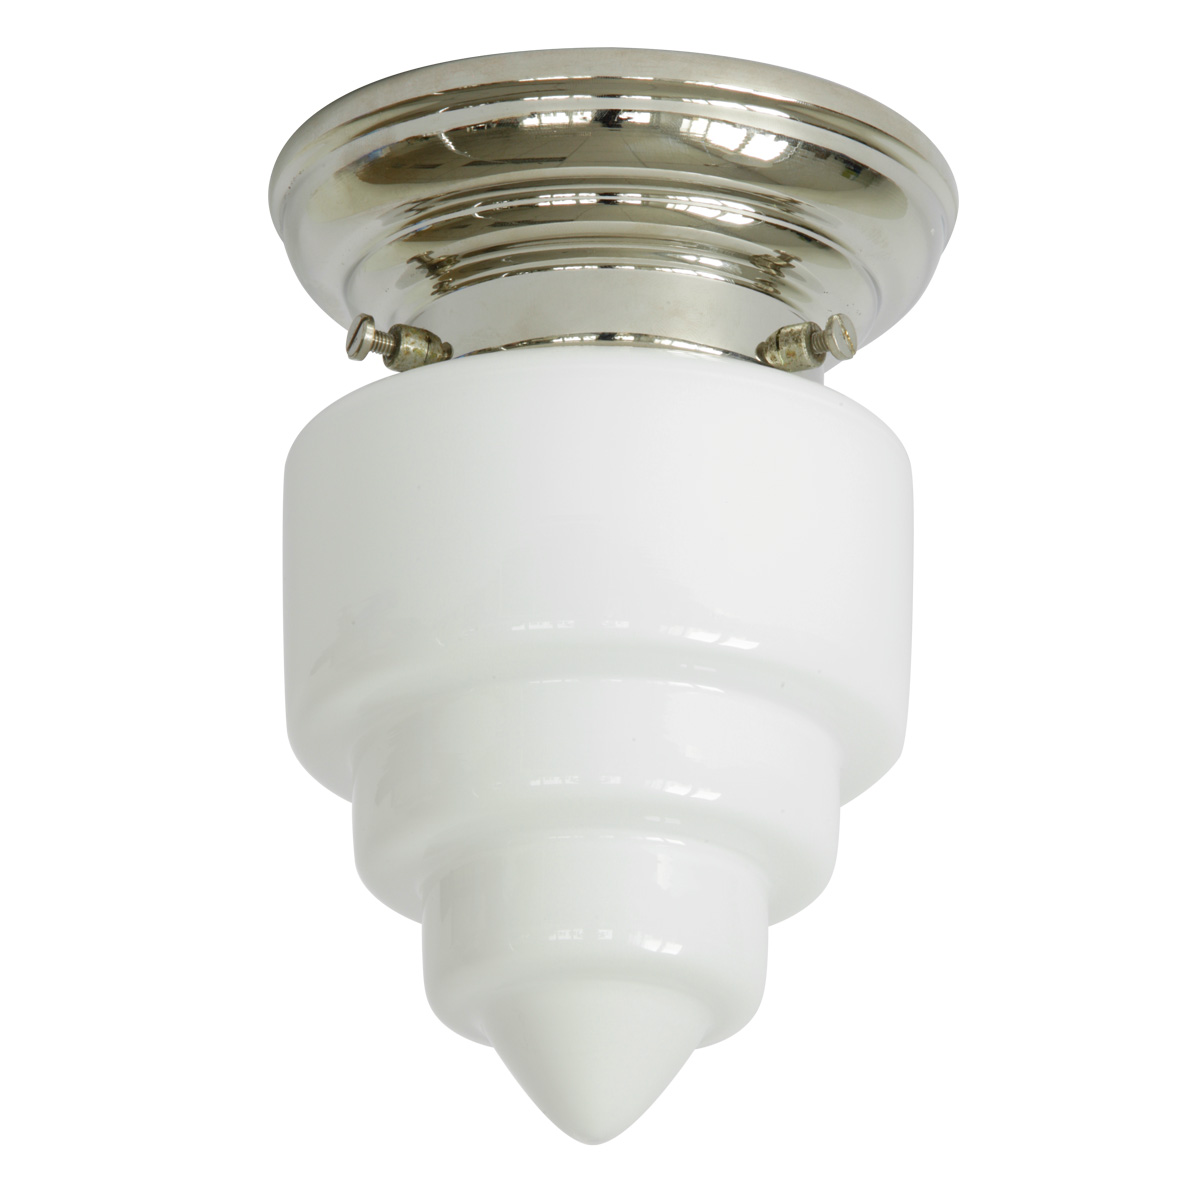 Kleine Deckenlampe mit weißem Treppenglas Ø 11 cm: Deckenleuchte, abgebildet mit glanzvernickeltem Deckenteil